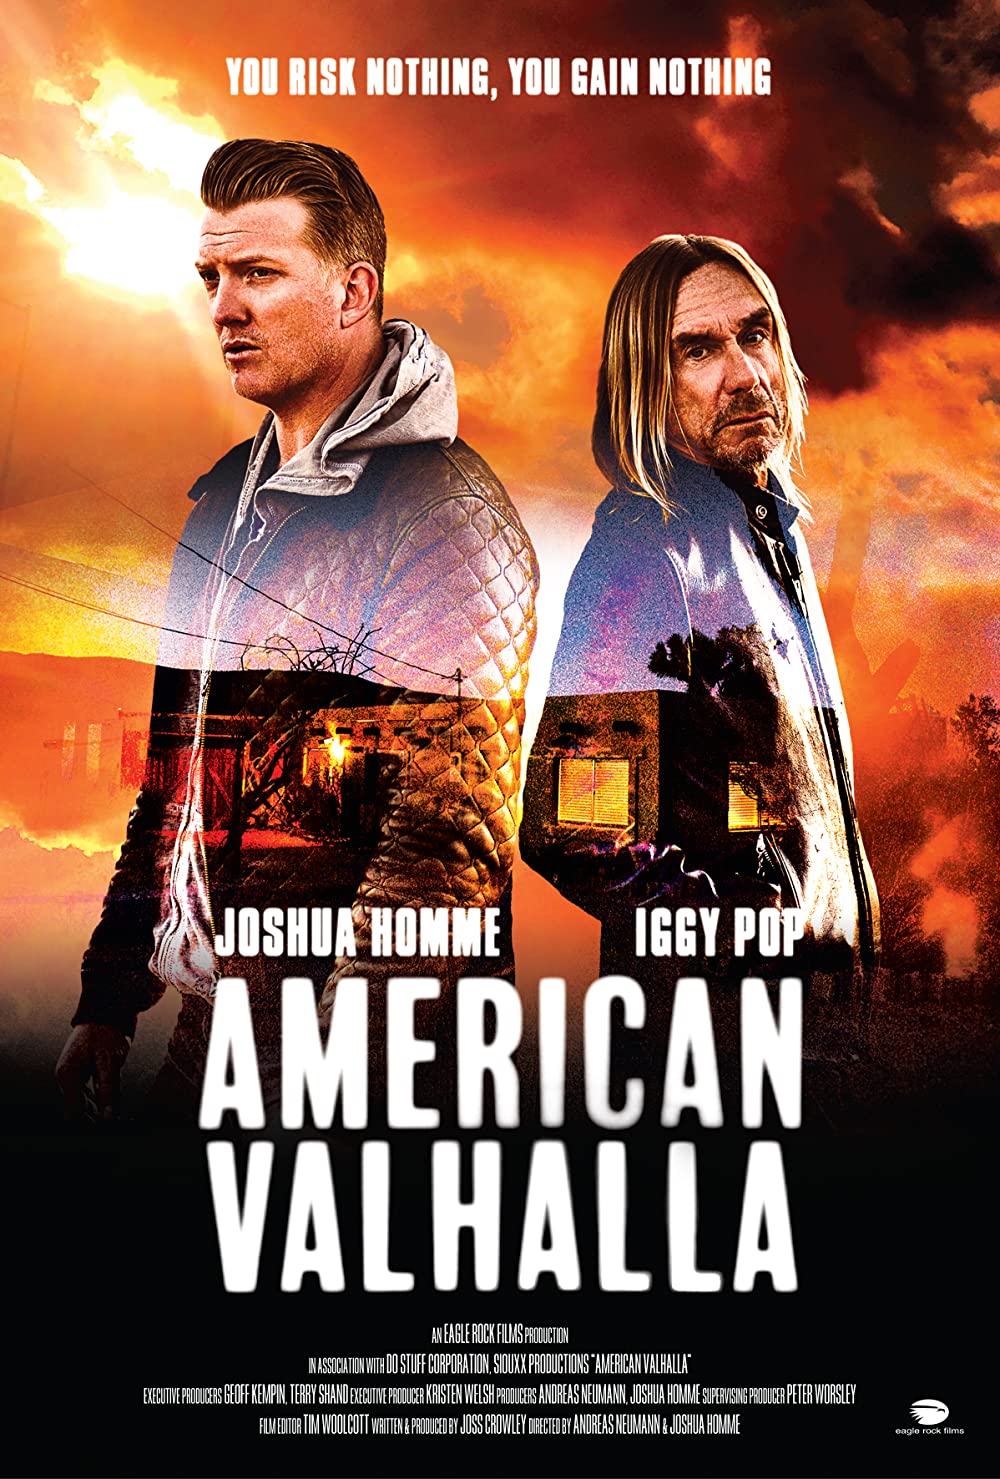 Filmbeschreibung zu American Valhalla